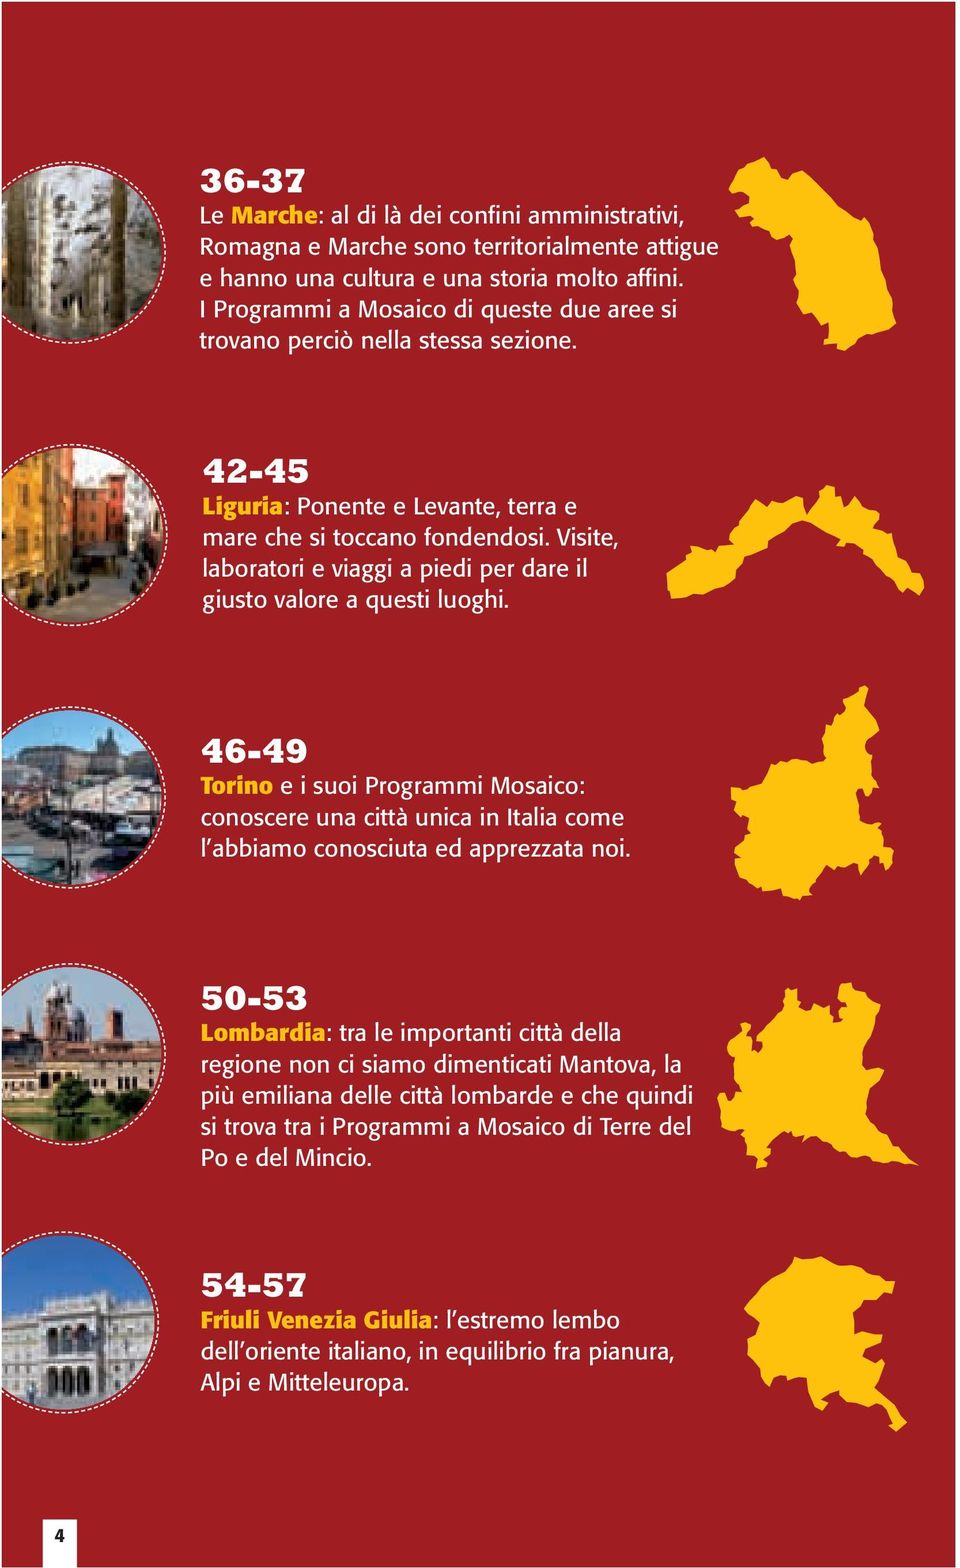 Visite, laboratori e viaggi a piedi per dare il giusto valore a questi luoghi. 46-49 Torino e i suoi Programmi Mosaico: conoscere una città unica in Italia come l abbiamo conosciuta ed apprezzata noi.